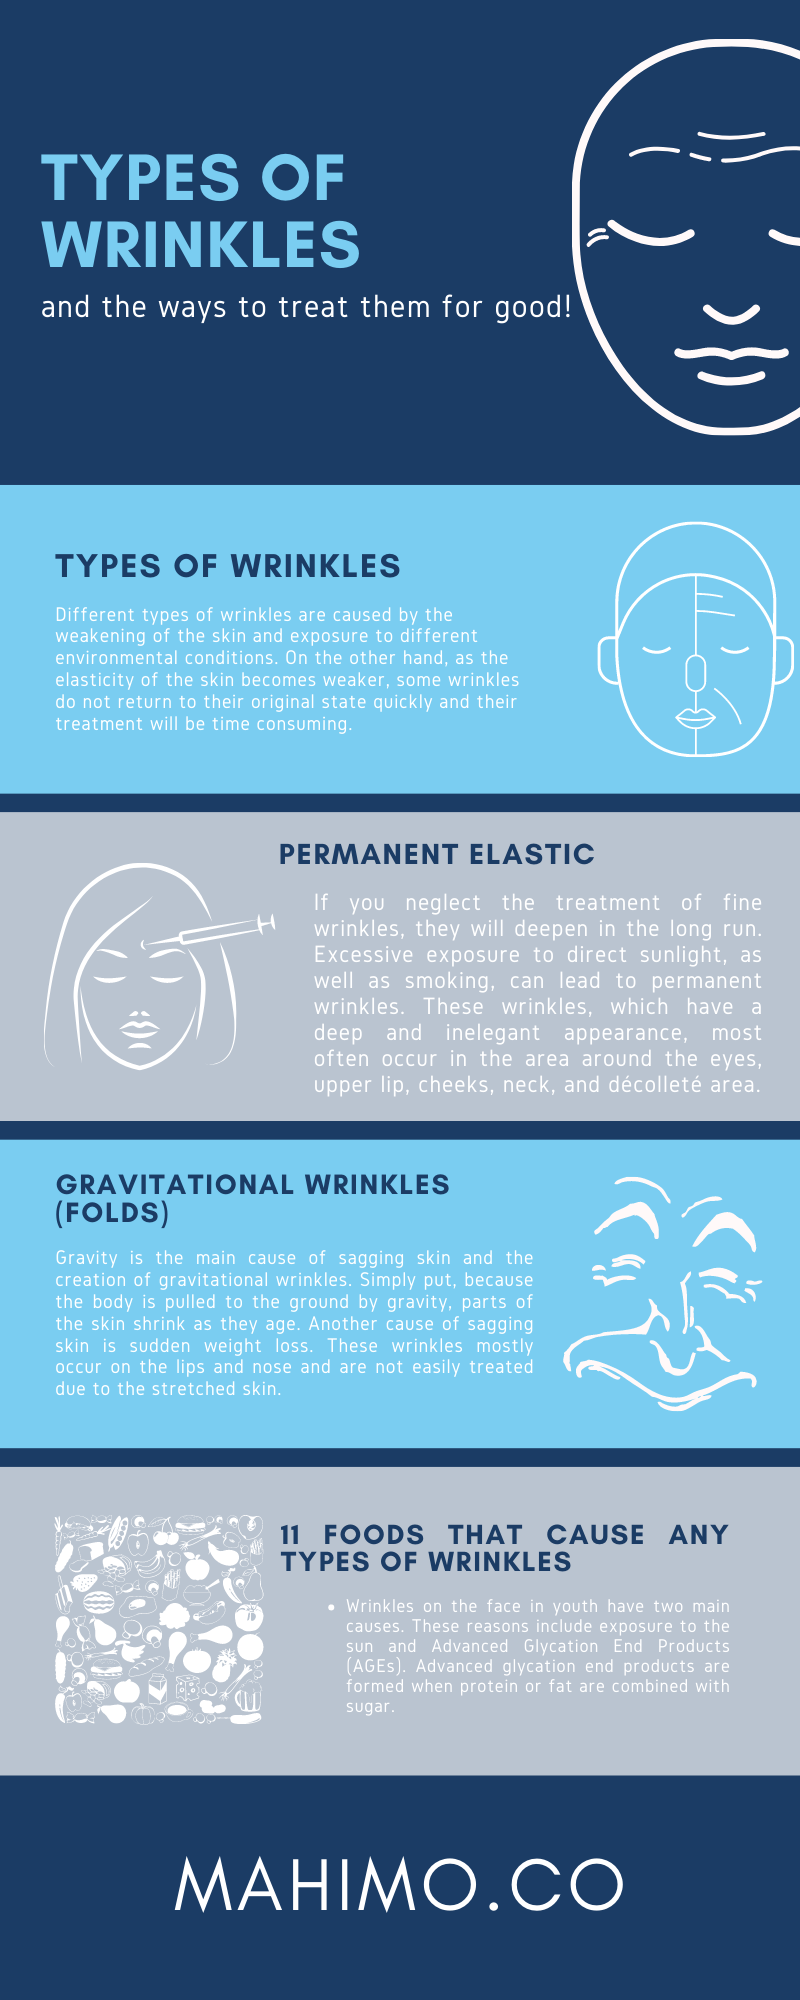 Types of wrinkles